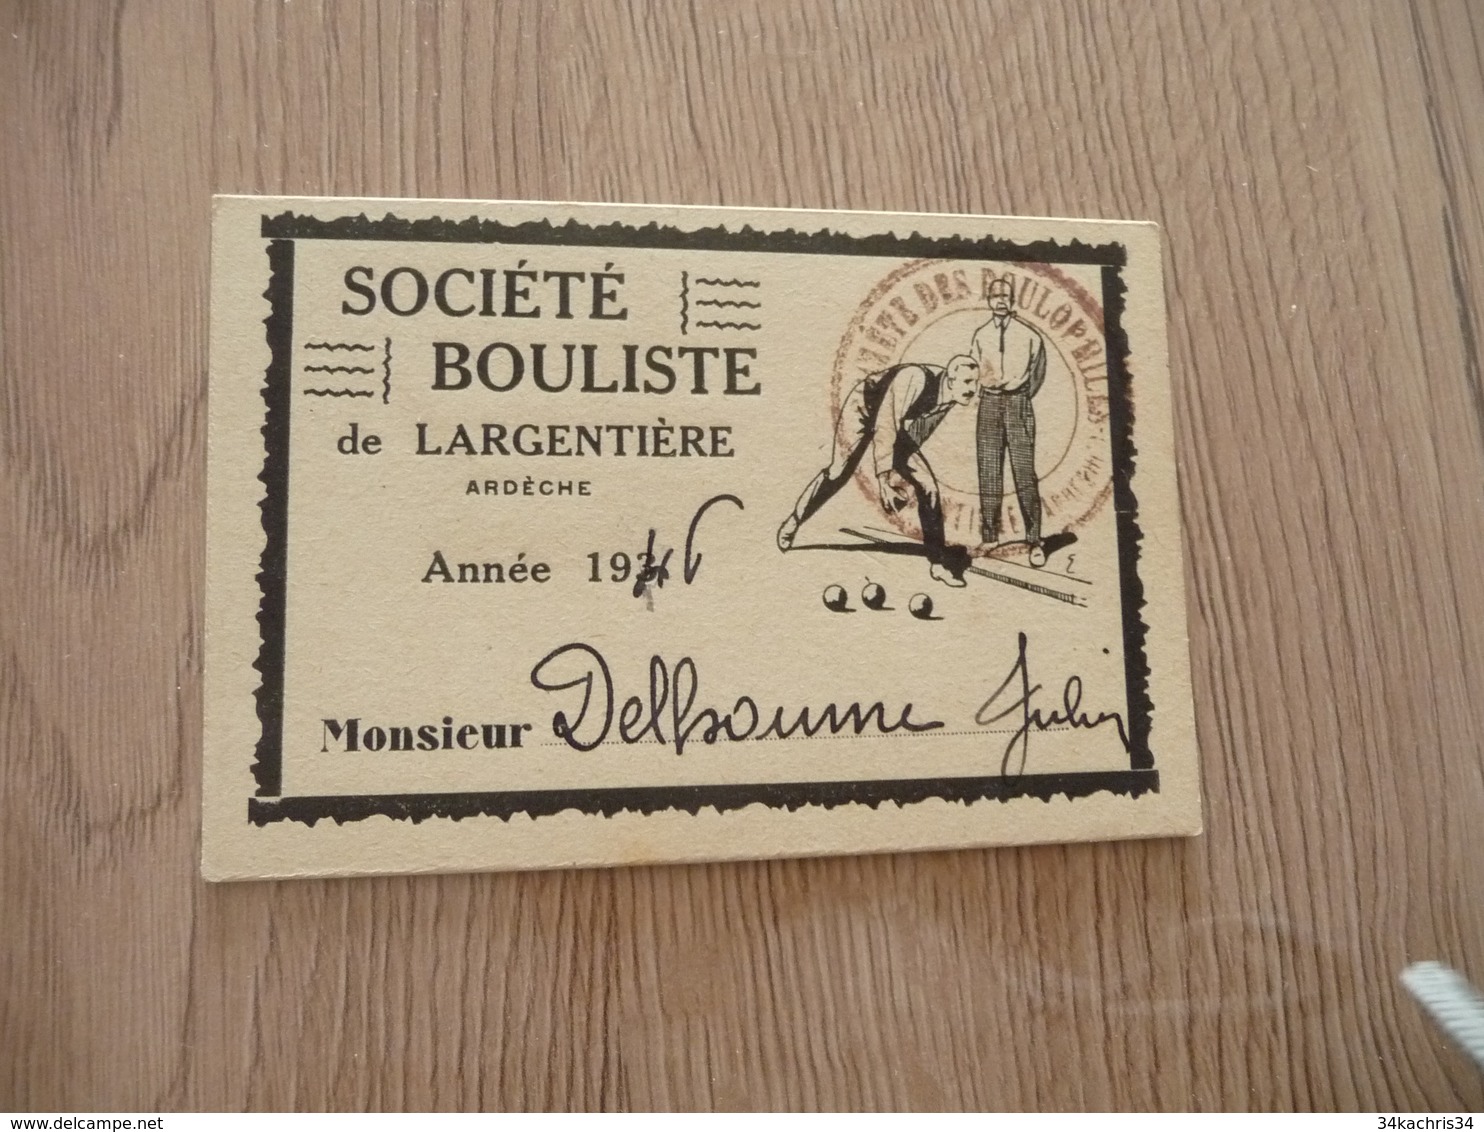 Carte De Membre Pétanque Boules Société Boulistique De Largentière Ardèche 1946 - Petanque